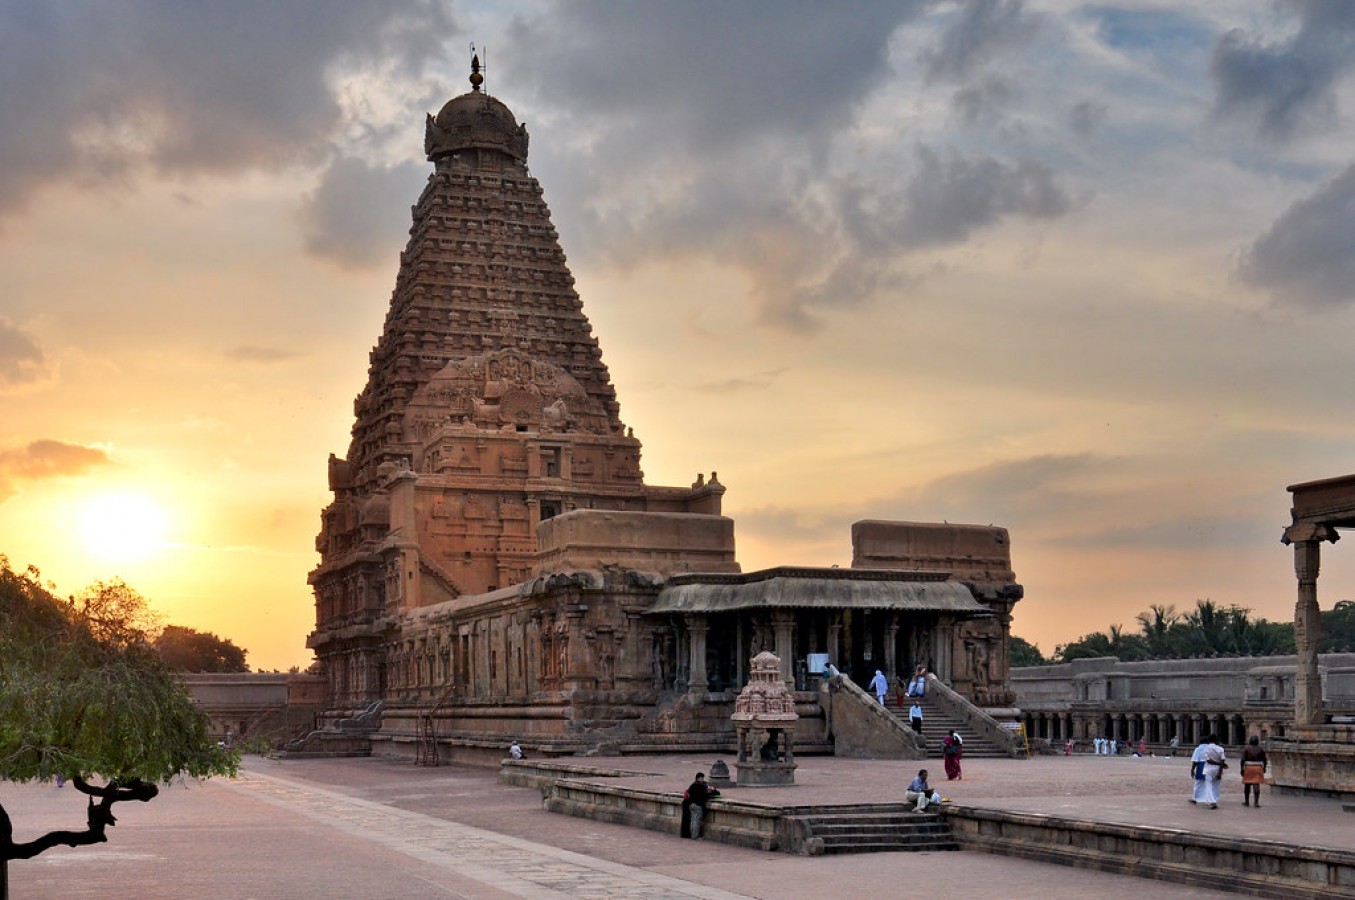 Brihadeeswara Temple; A temple with no foundation hiding secrets ...